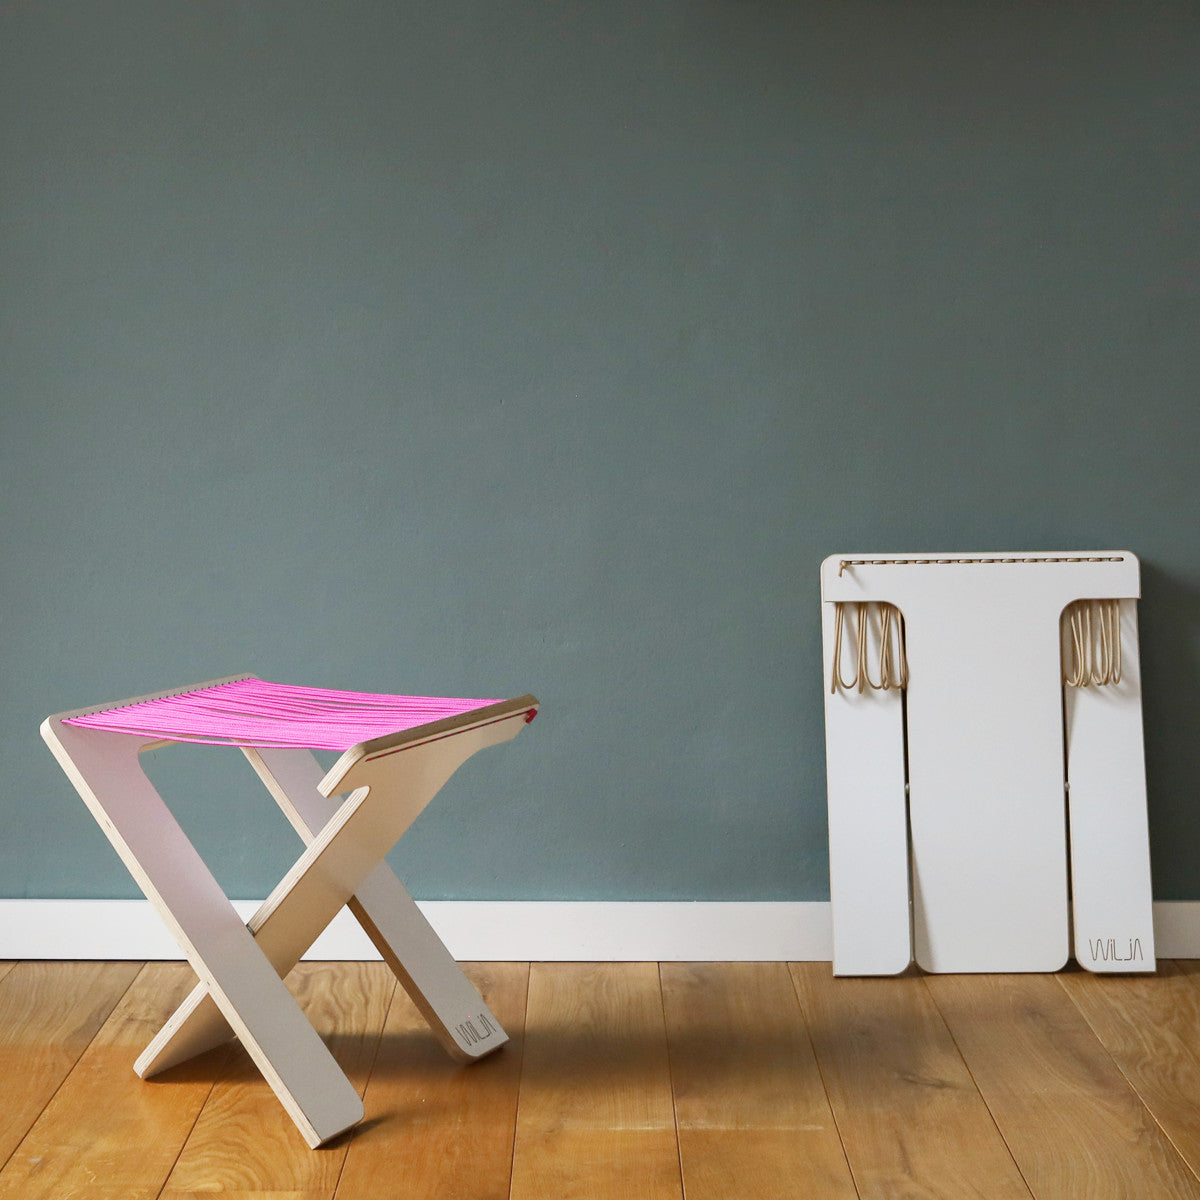 WILJA Klapphocker Karl faltbar aus Holz mit Seil in pink im Zimmer mobiles Sitzmöbel Nahaufnahme